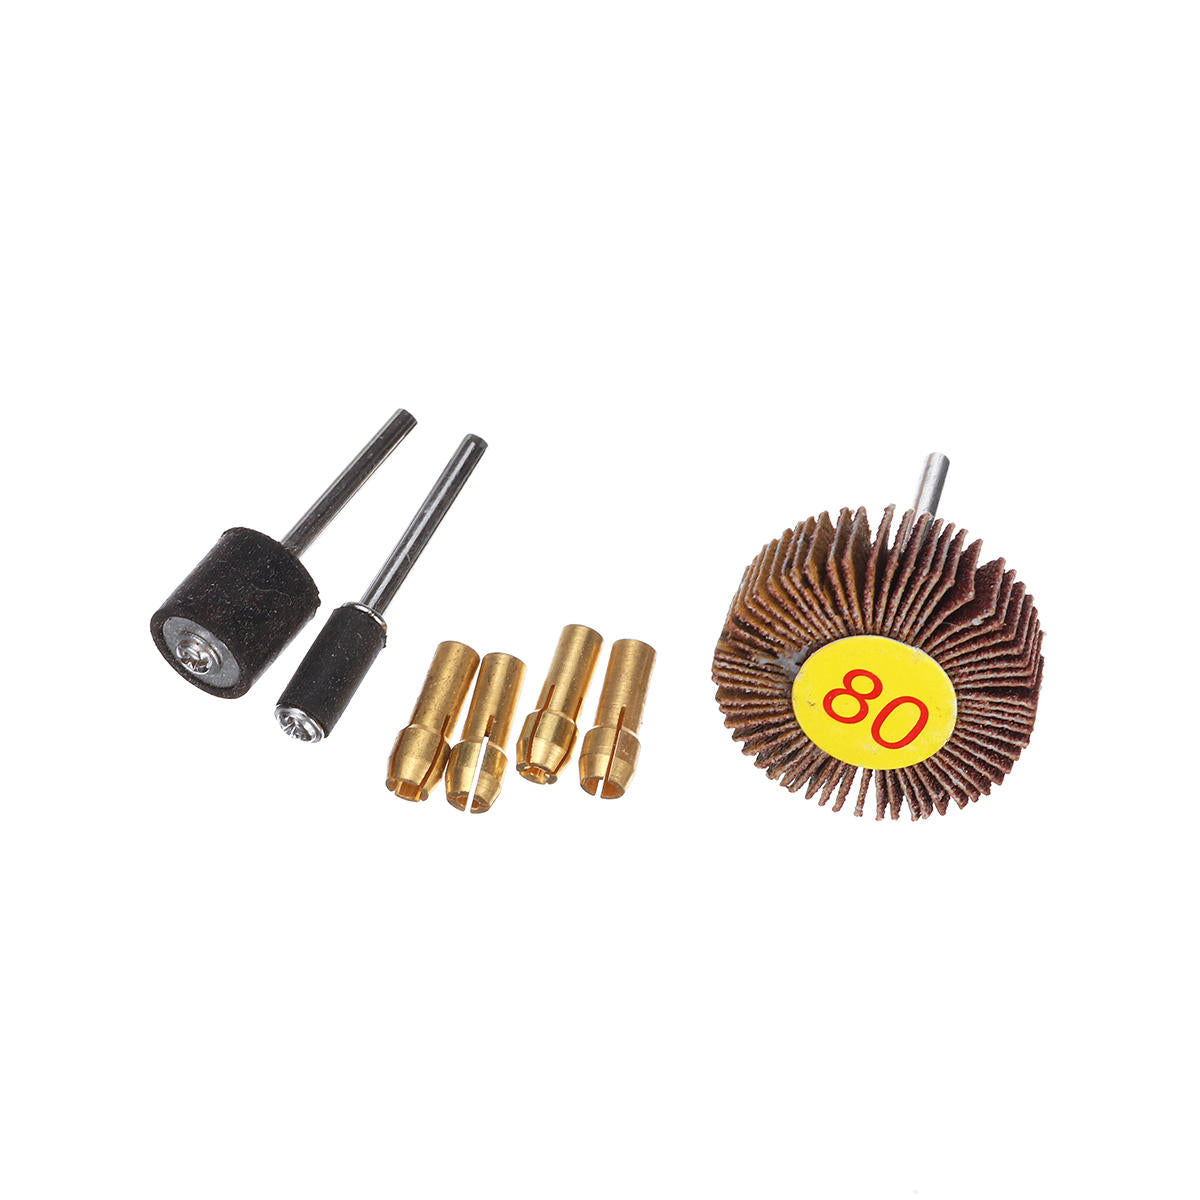 166 stuks mini elektrische grinder boor grinder accessoires rotary tool slijpen polish kit: